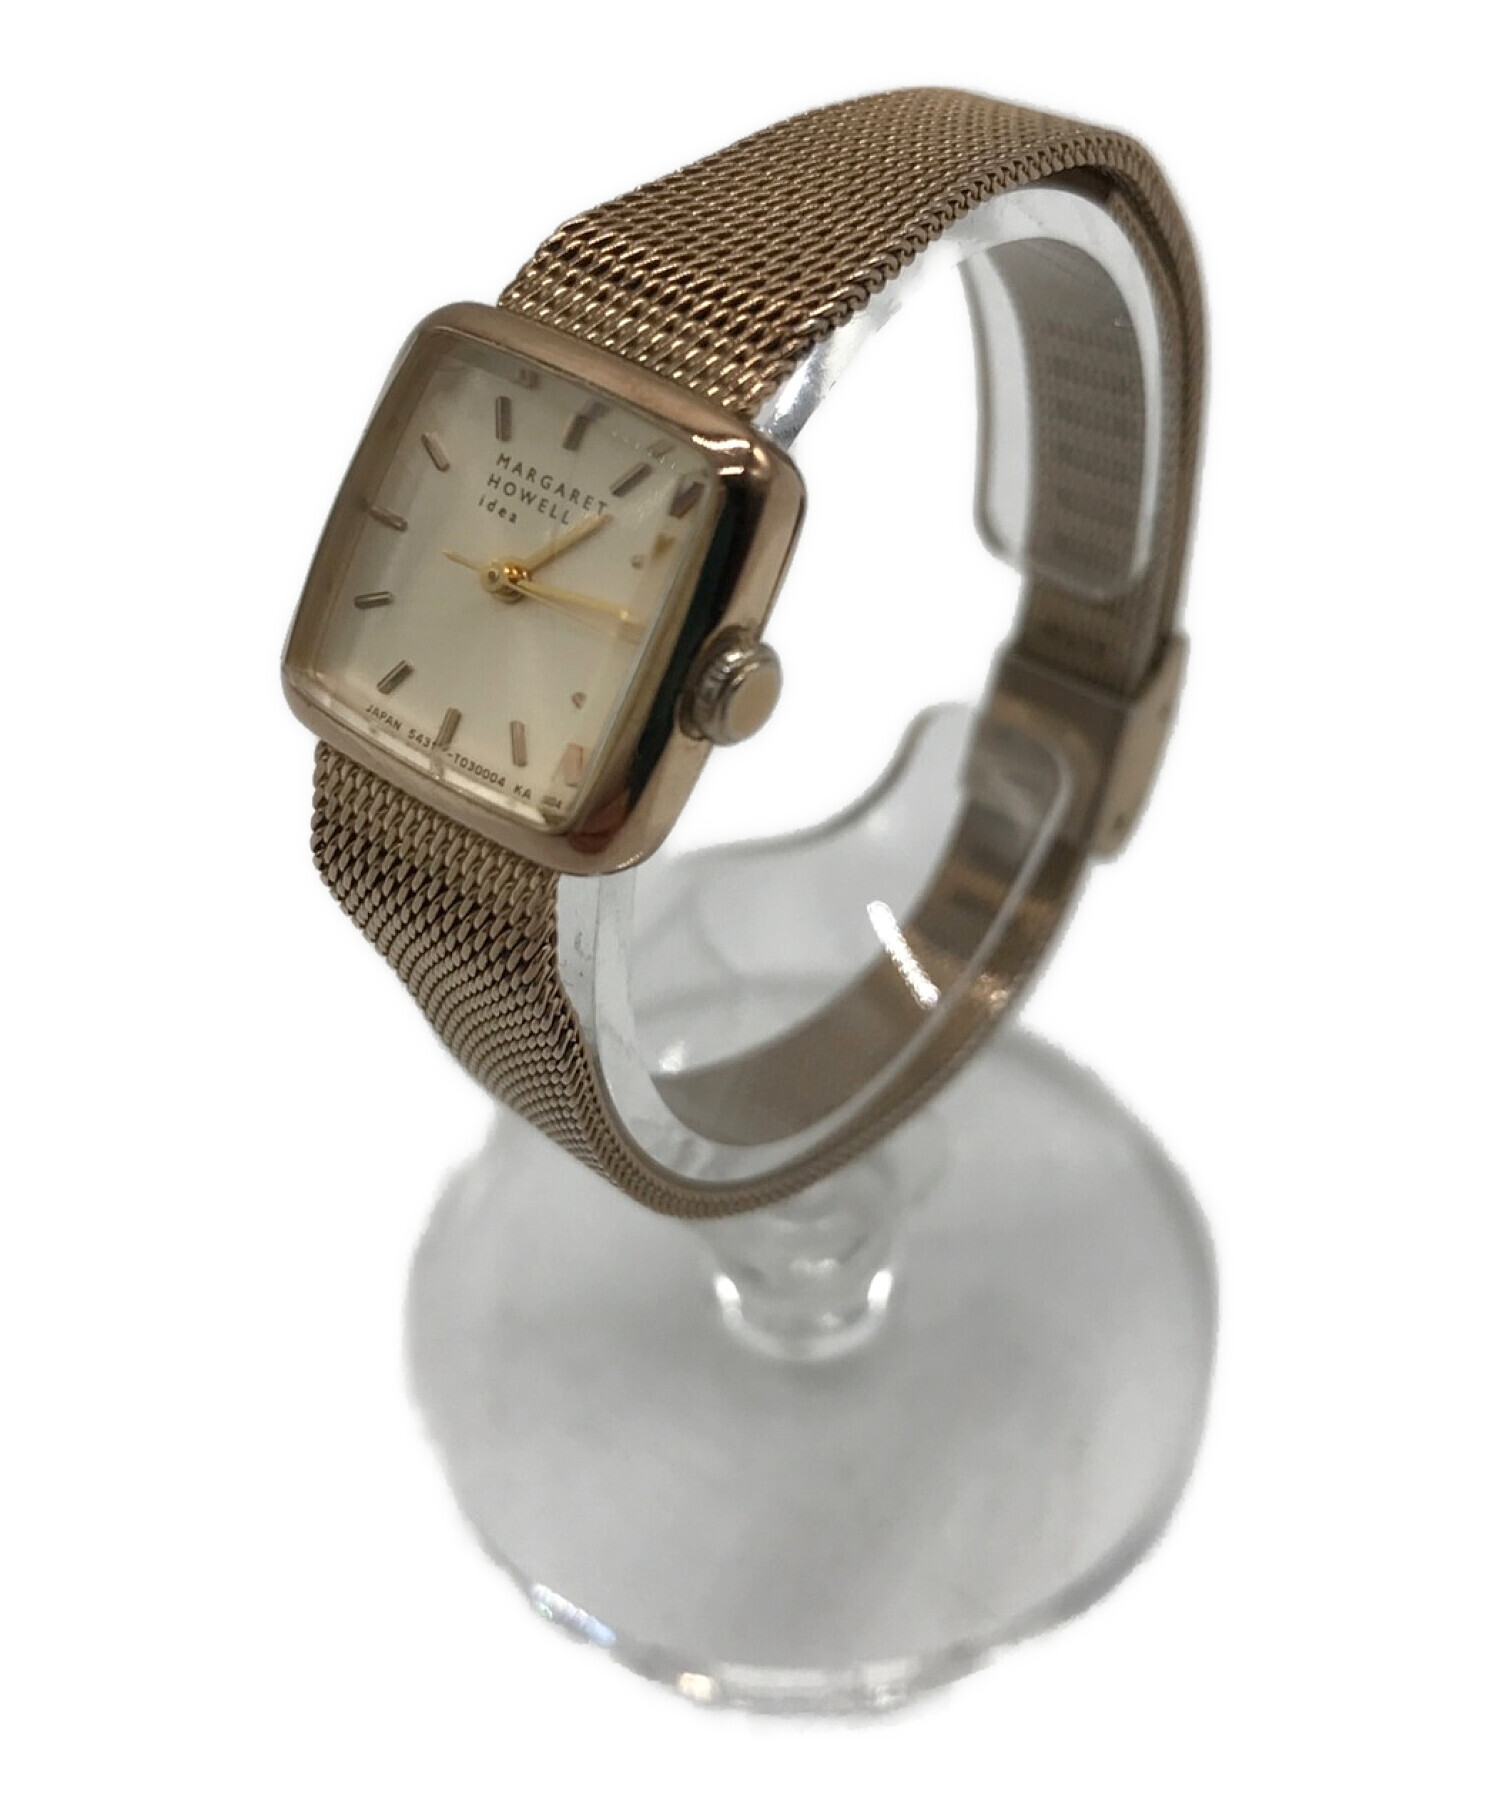 マーガレットハウエル 腕時計 サイズ大きめ - 腕時計、アクセサリー